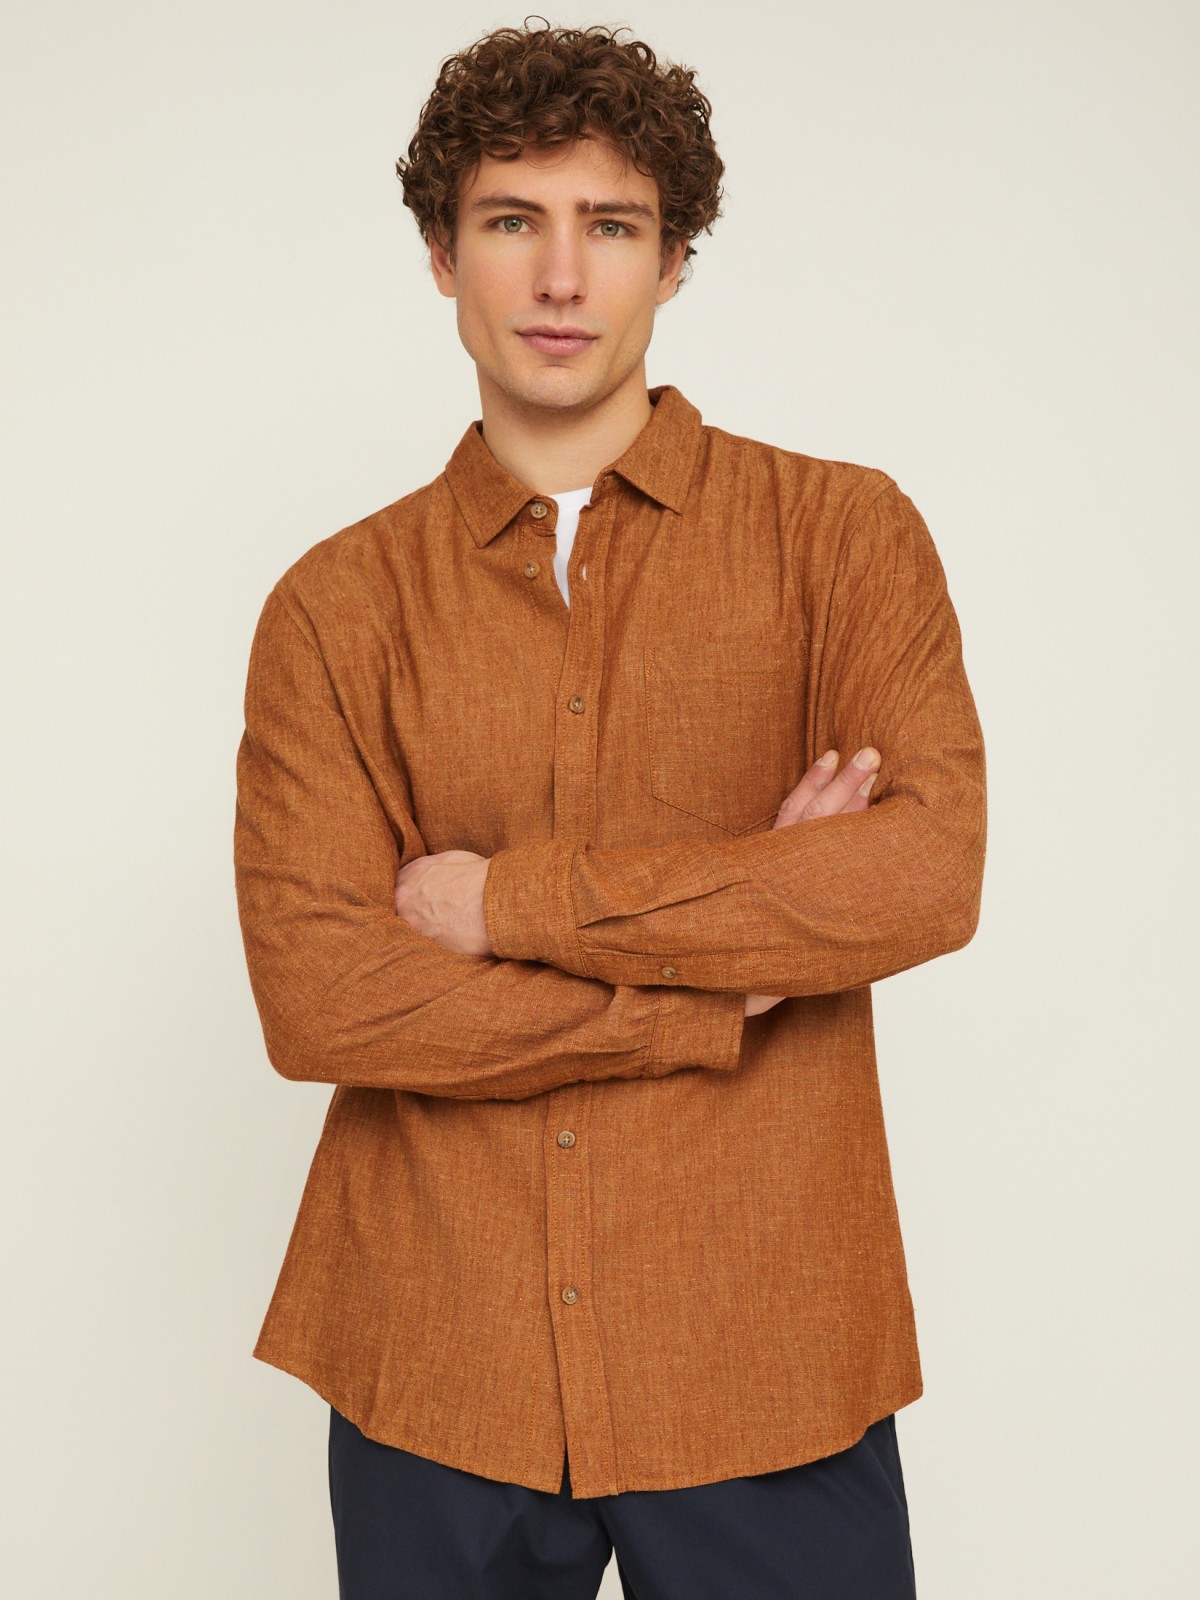 Льняная офисная рубашка прямого силуэта с карманом zolla 014212159053, цвет горчичный, размер M - фото 4